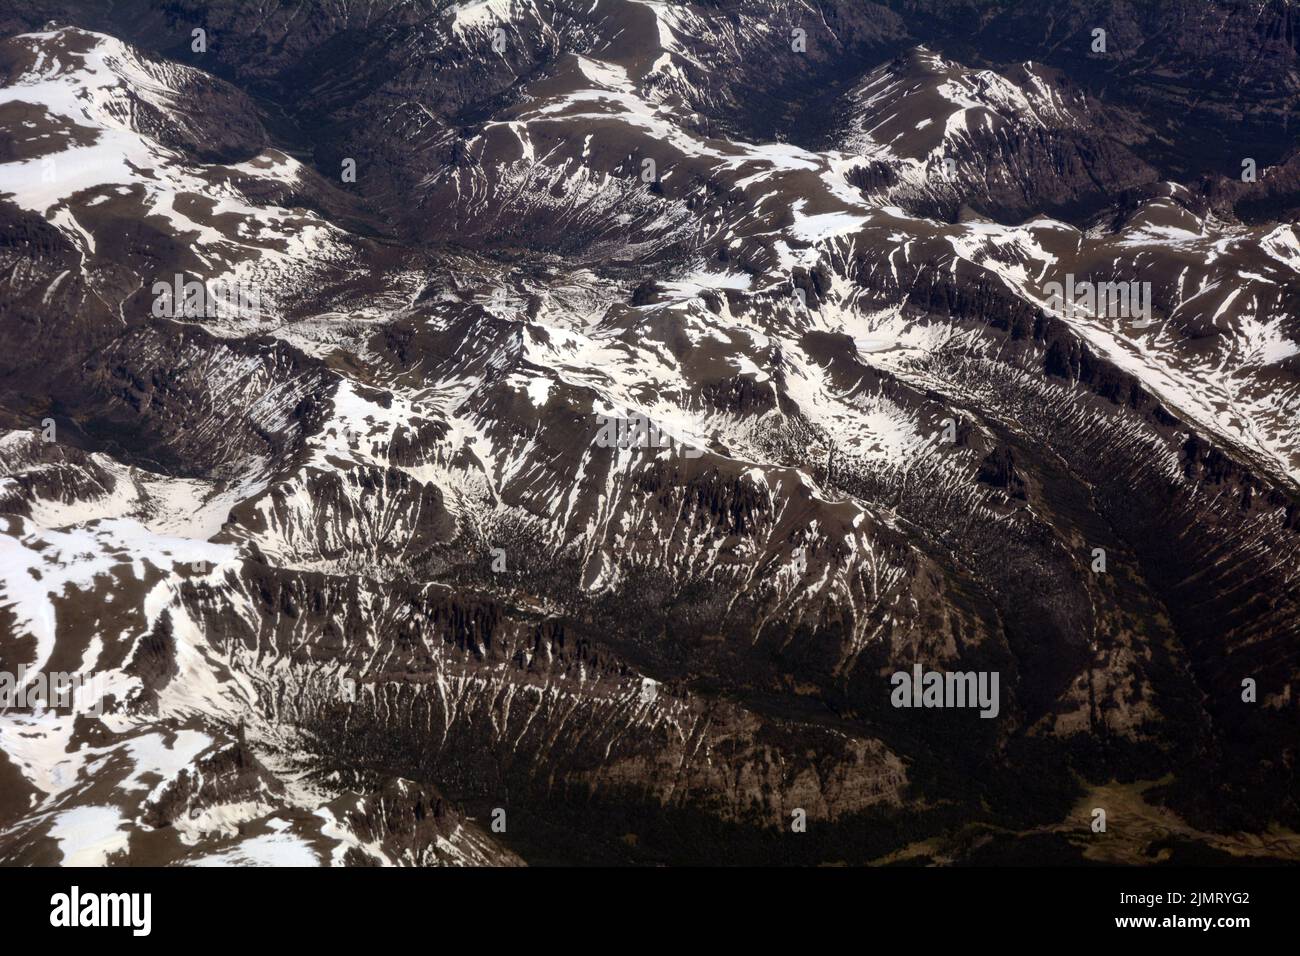 Vue aérienne de la forêt nationale de Shoshone et des monts Absaroka, une sous-gamme des montagnes Rocheuses, dans le nord-ouest du Wyoming, aux États-Unis. Banque D'Images